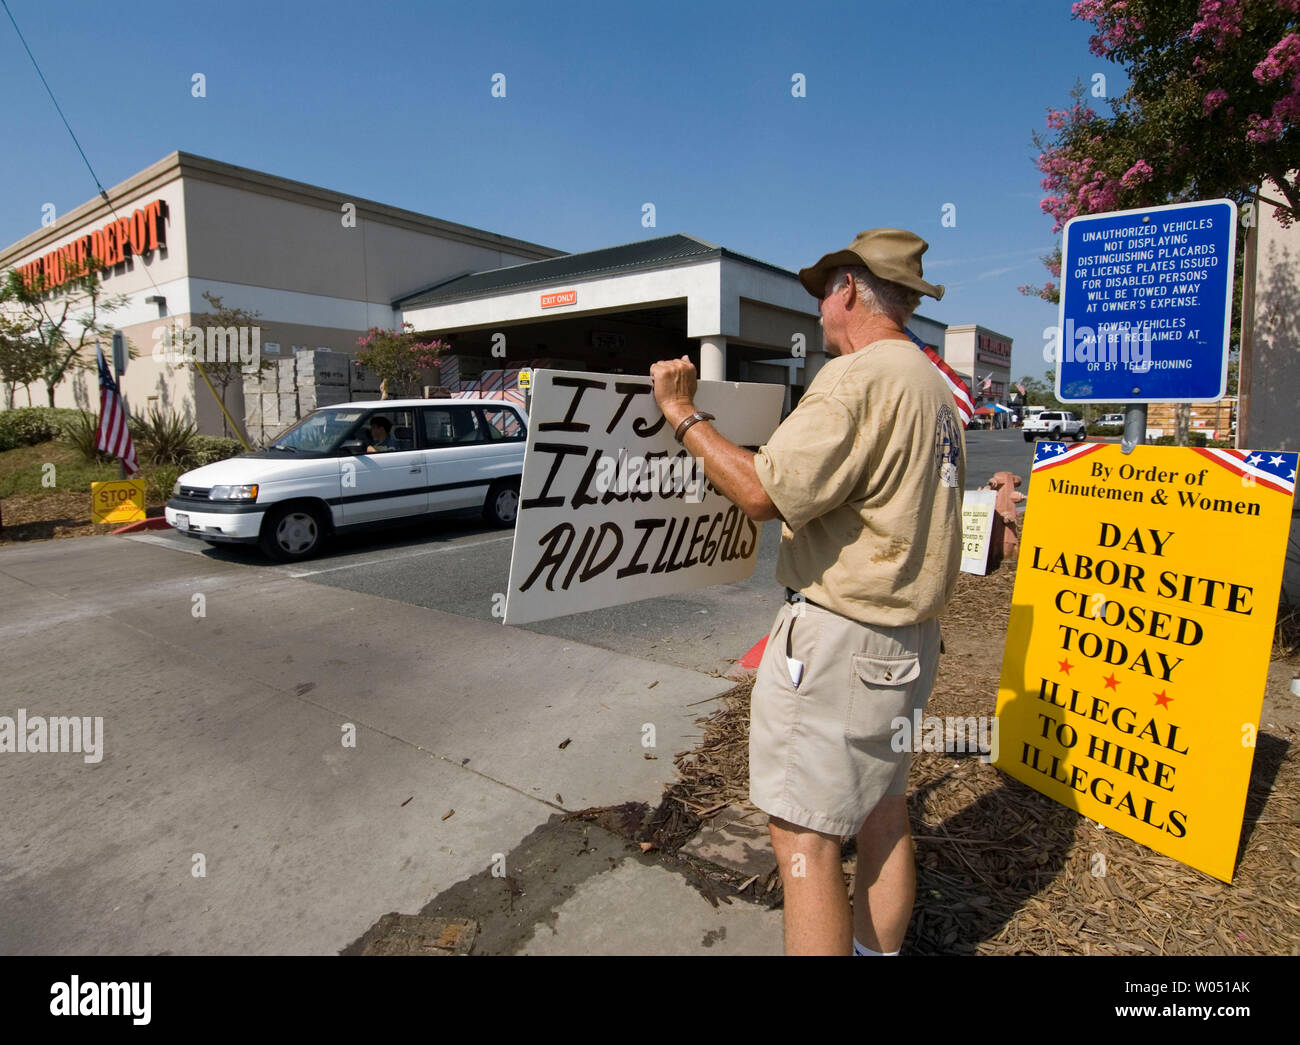 Membri del Minutemen anti-immigrazione protesta di gruppo l'assunzione illegale di giorno fatiche al di fuori di una San Diego California Home Depot, Luglio 23 2006, come giorno messicano fatiche cercando lavoro protesta del contatore. (UPI foto/Earl S. Cryer) Foto Stock